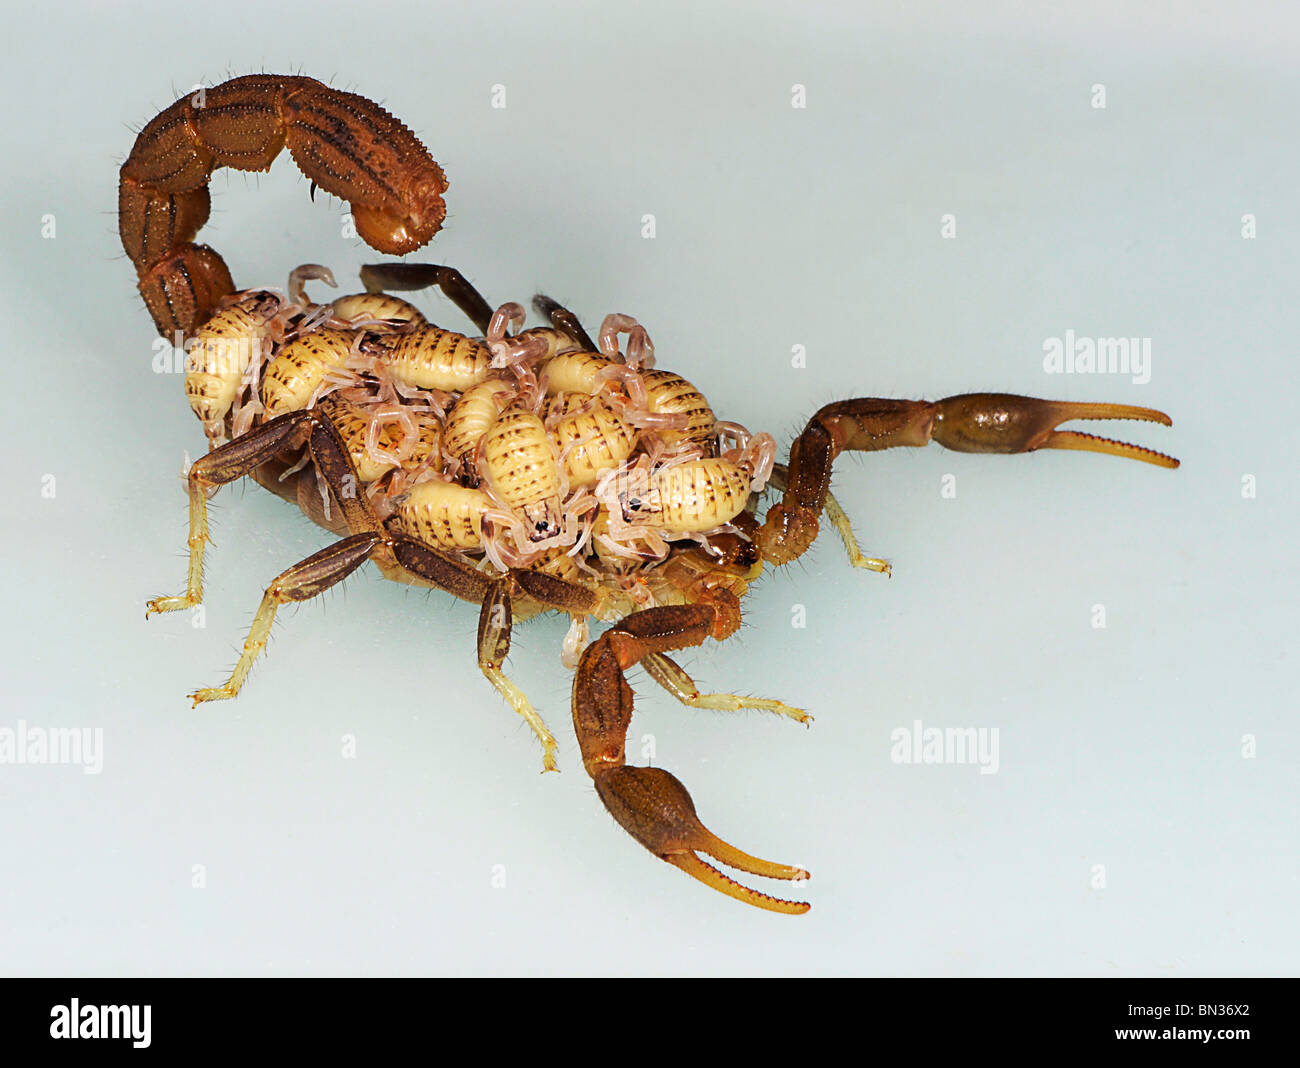 Hottentota scorpion, fotografiado en Tanzania, África llevando sus jóvenes sobre su espalda, una característica de su comportamiento maternal. Foto de stock